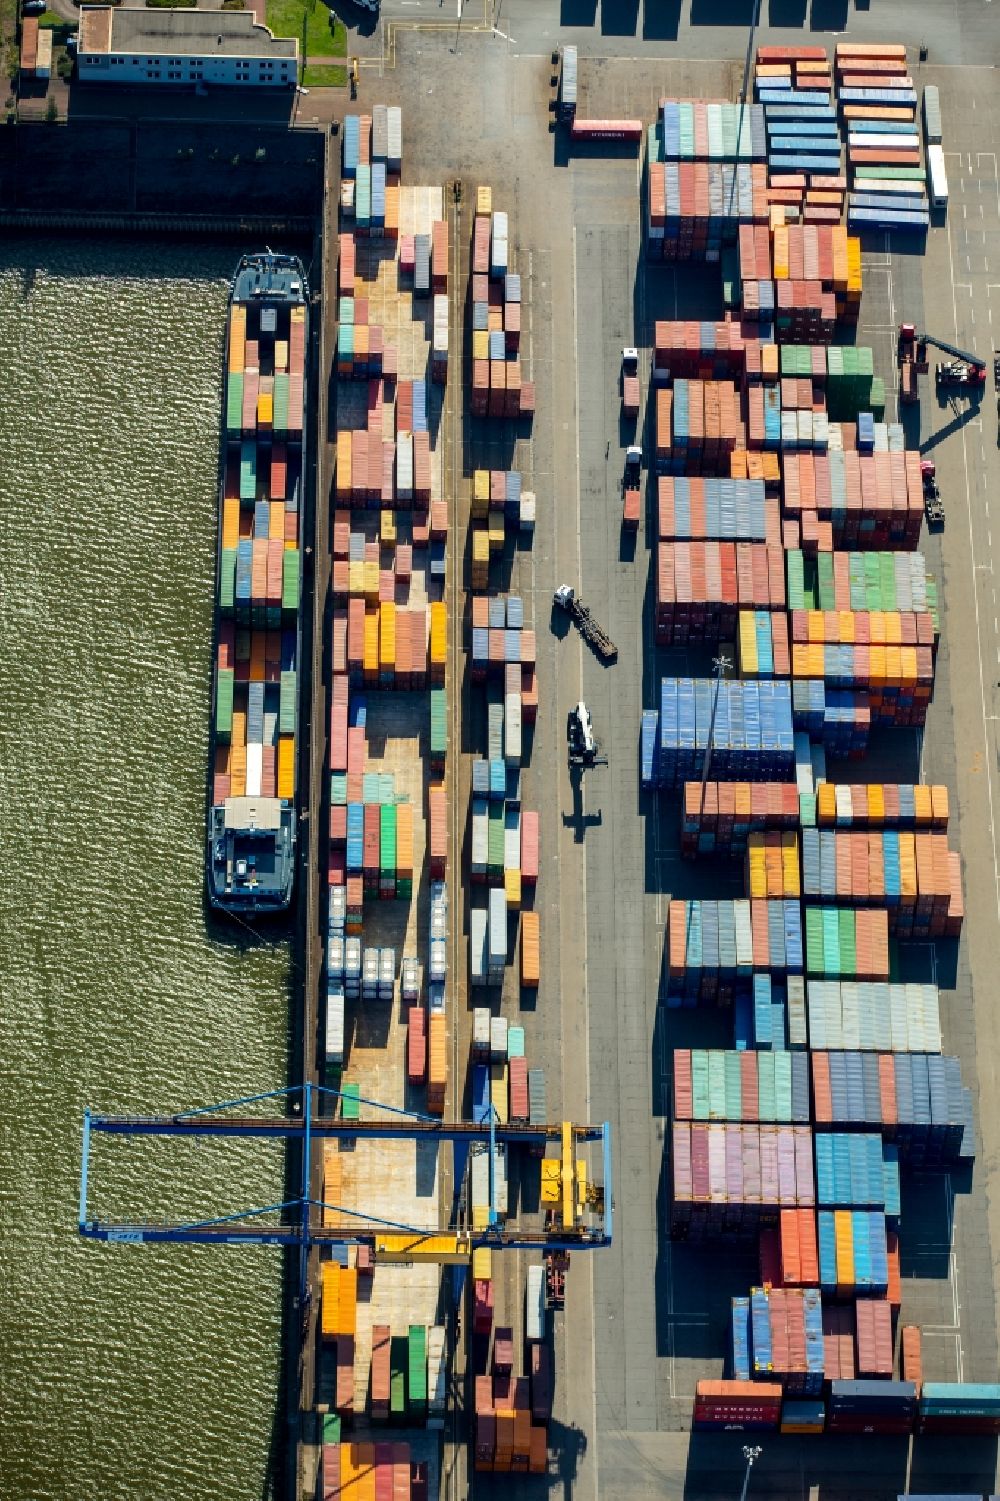 Duisburg aus der Vogelperspektive: Containerterminal im Containerhafen des Binnenhafen Logport I Duisport im Logistikzentrum Rheinhausen in Duisburg im Bundesland Nordrhein-Westfalen